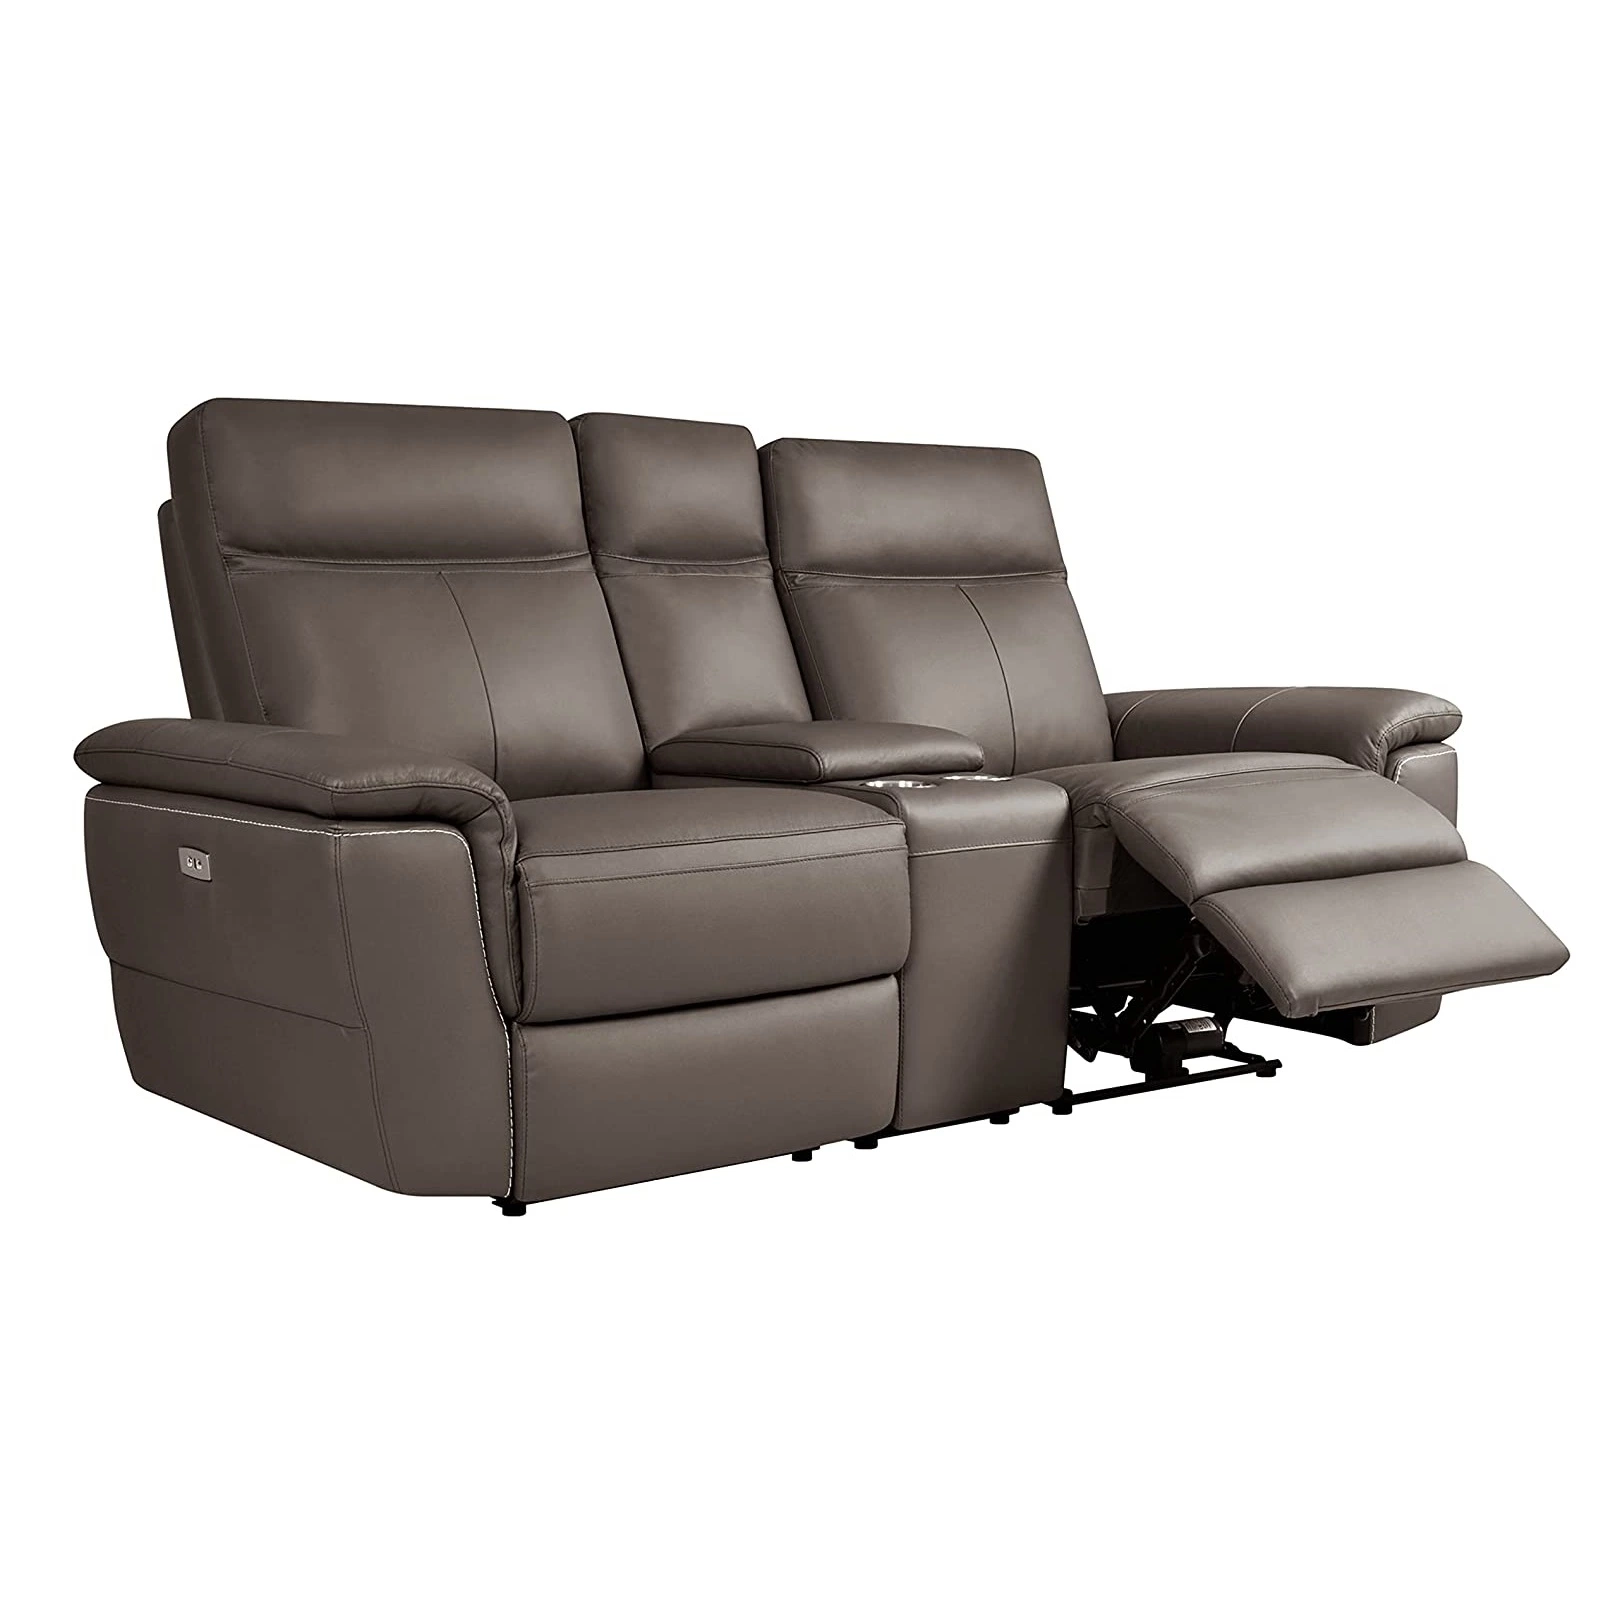 O Geeksofa moderno sofá-cama reclinável em tecido de 3 ou 2 lugares é reclinável Para mobiliário de sala de estar